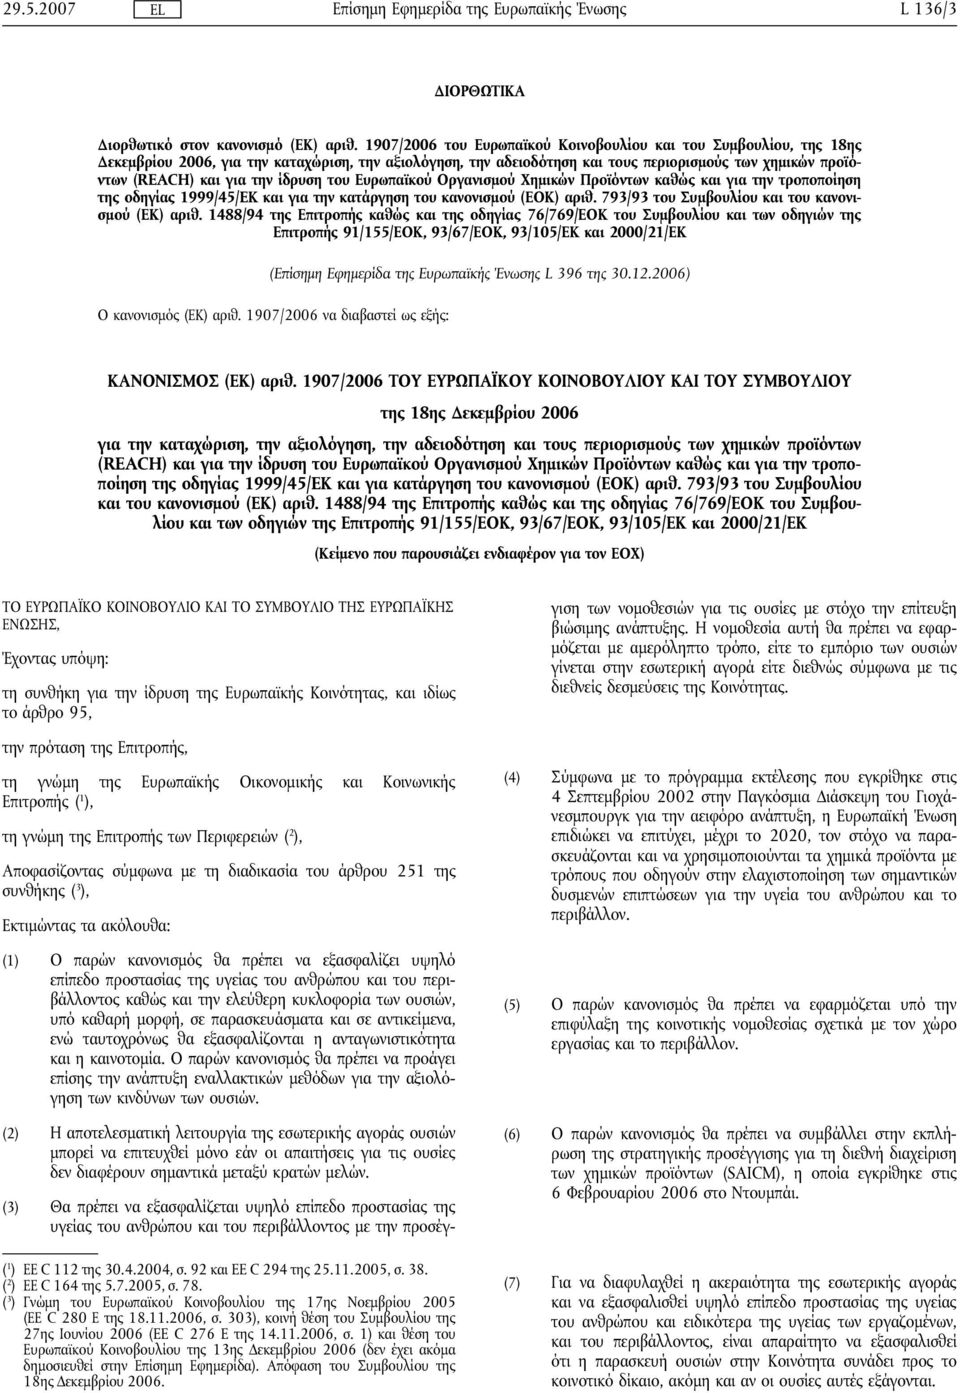 ίδρυση του Ευρωπαϊκού Οργανισμού Χημικών Προϊόντων καθώς και για την τροποποίηση της οδηγίας 1999/45/EΚ και για την κατάργηση του κανονισμού (ΕΟΚ αριθ.